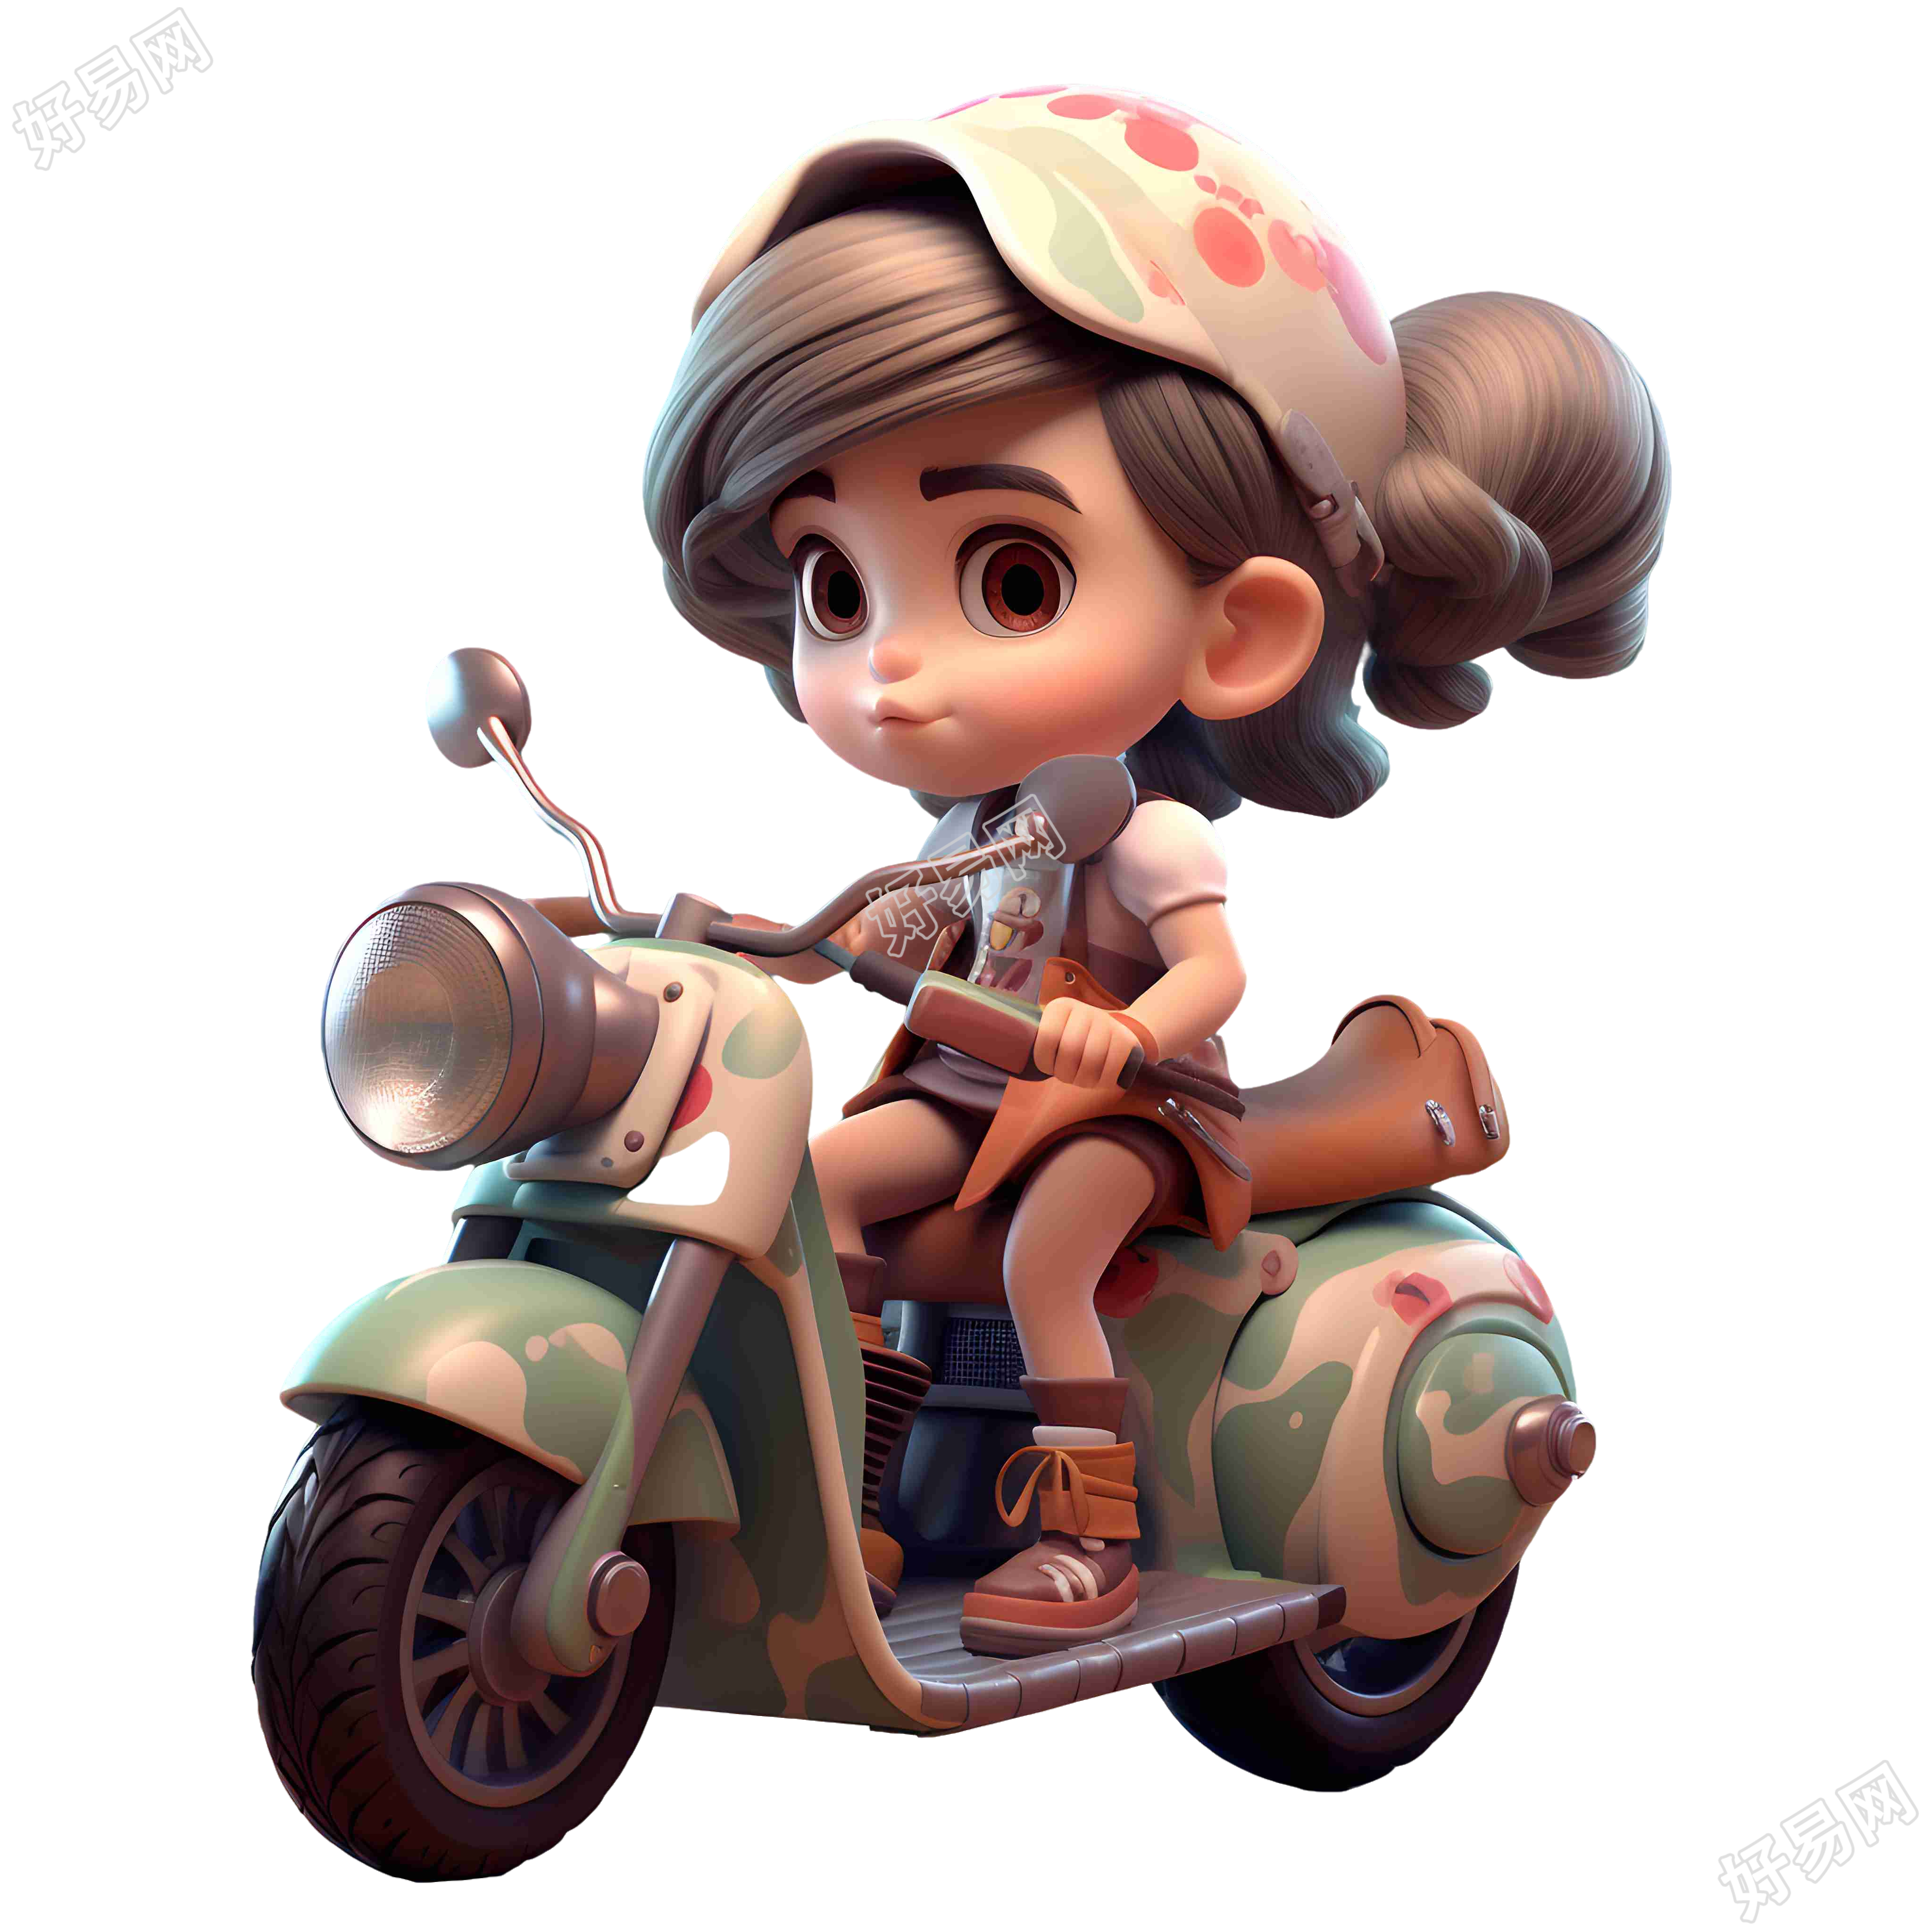 可爱玩具雕塑风格的摩托车女孩插画